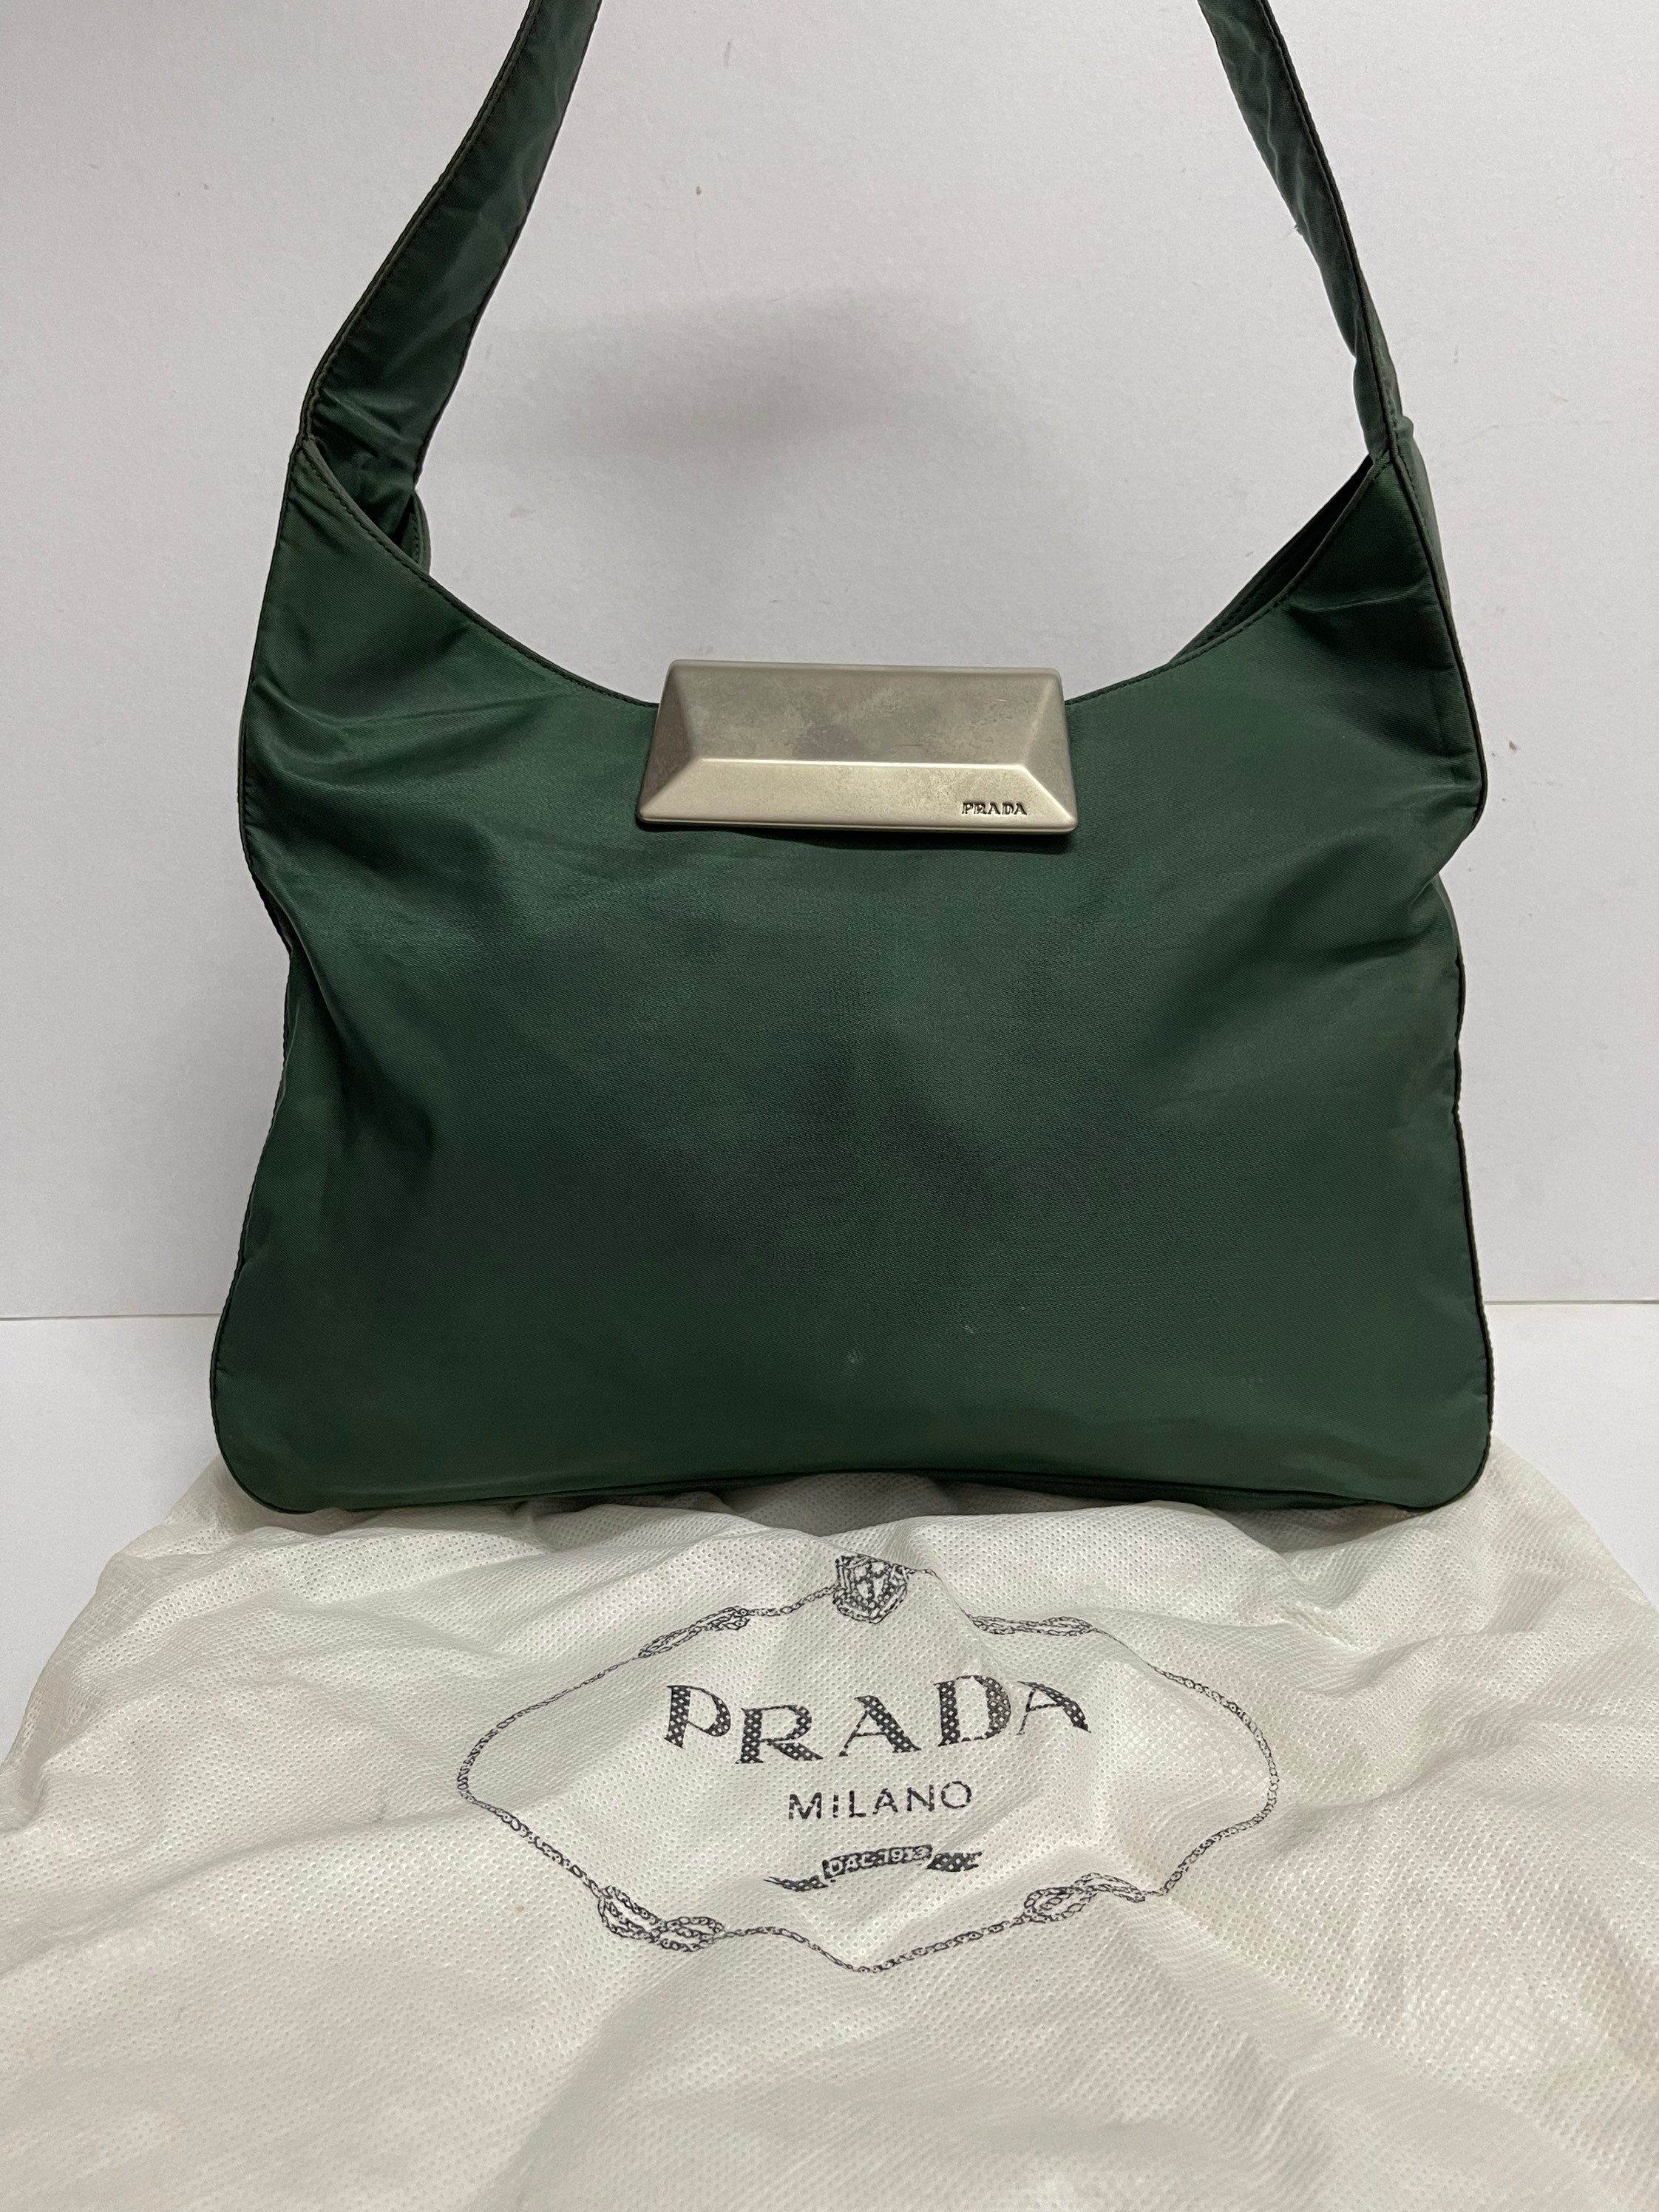 Buy Prada Nylon Bag Online In India -  India